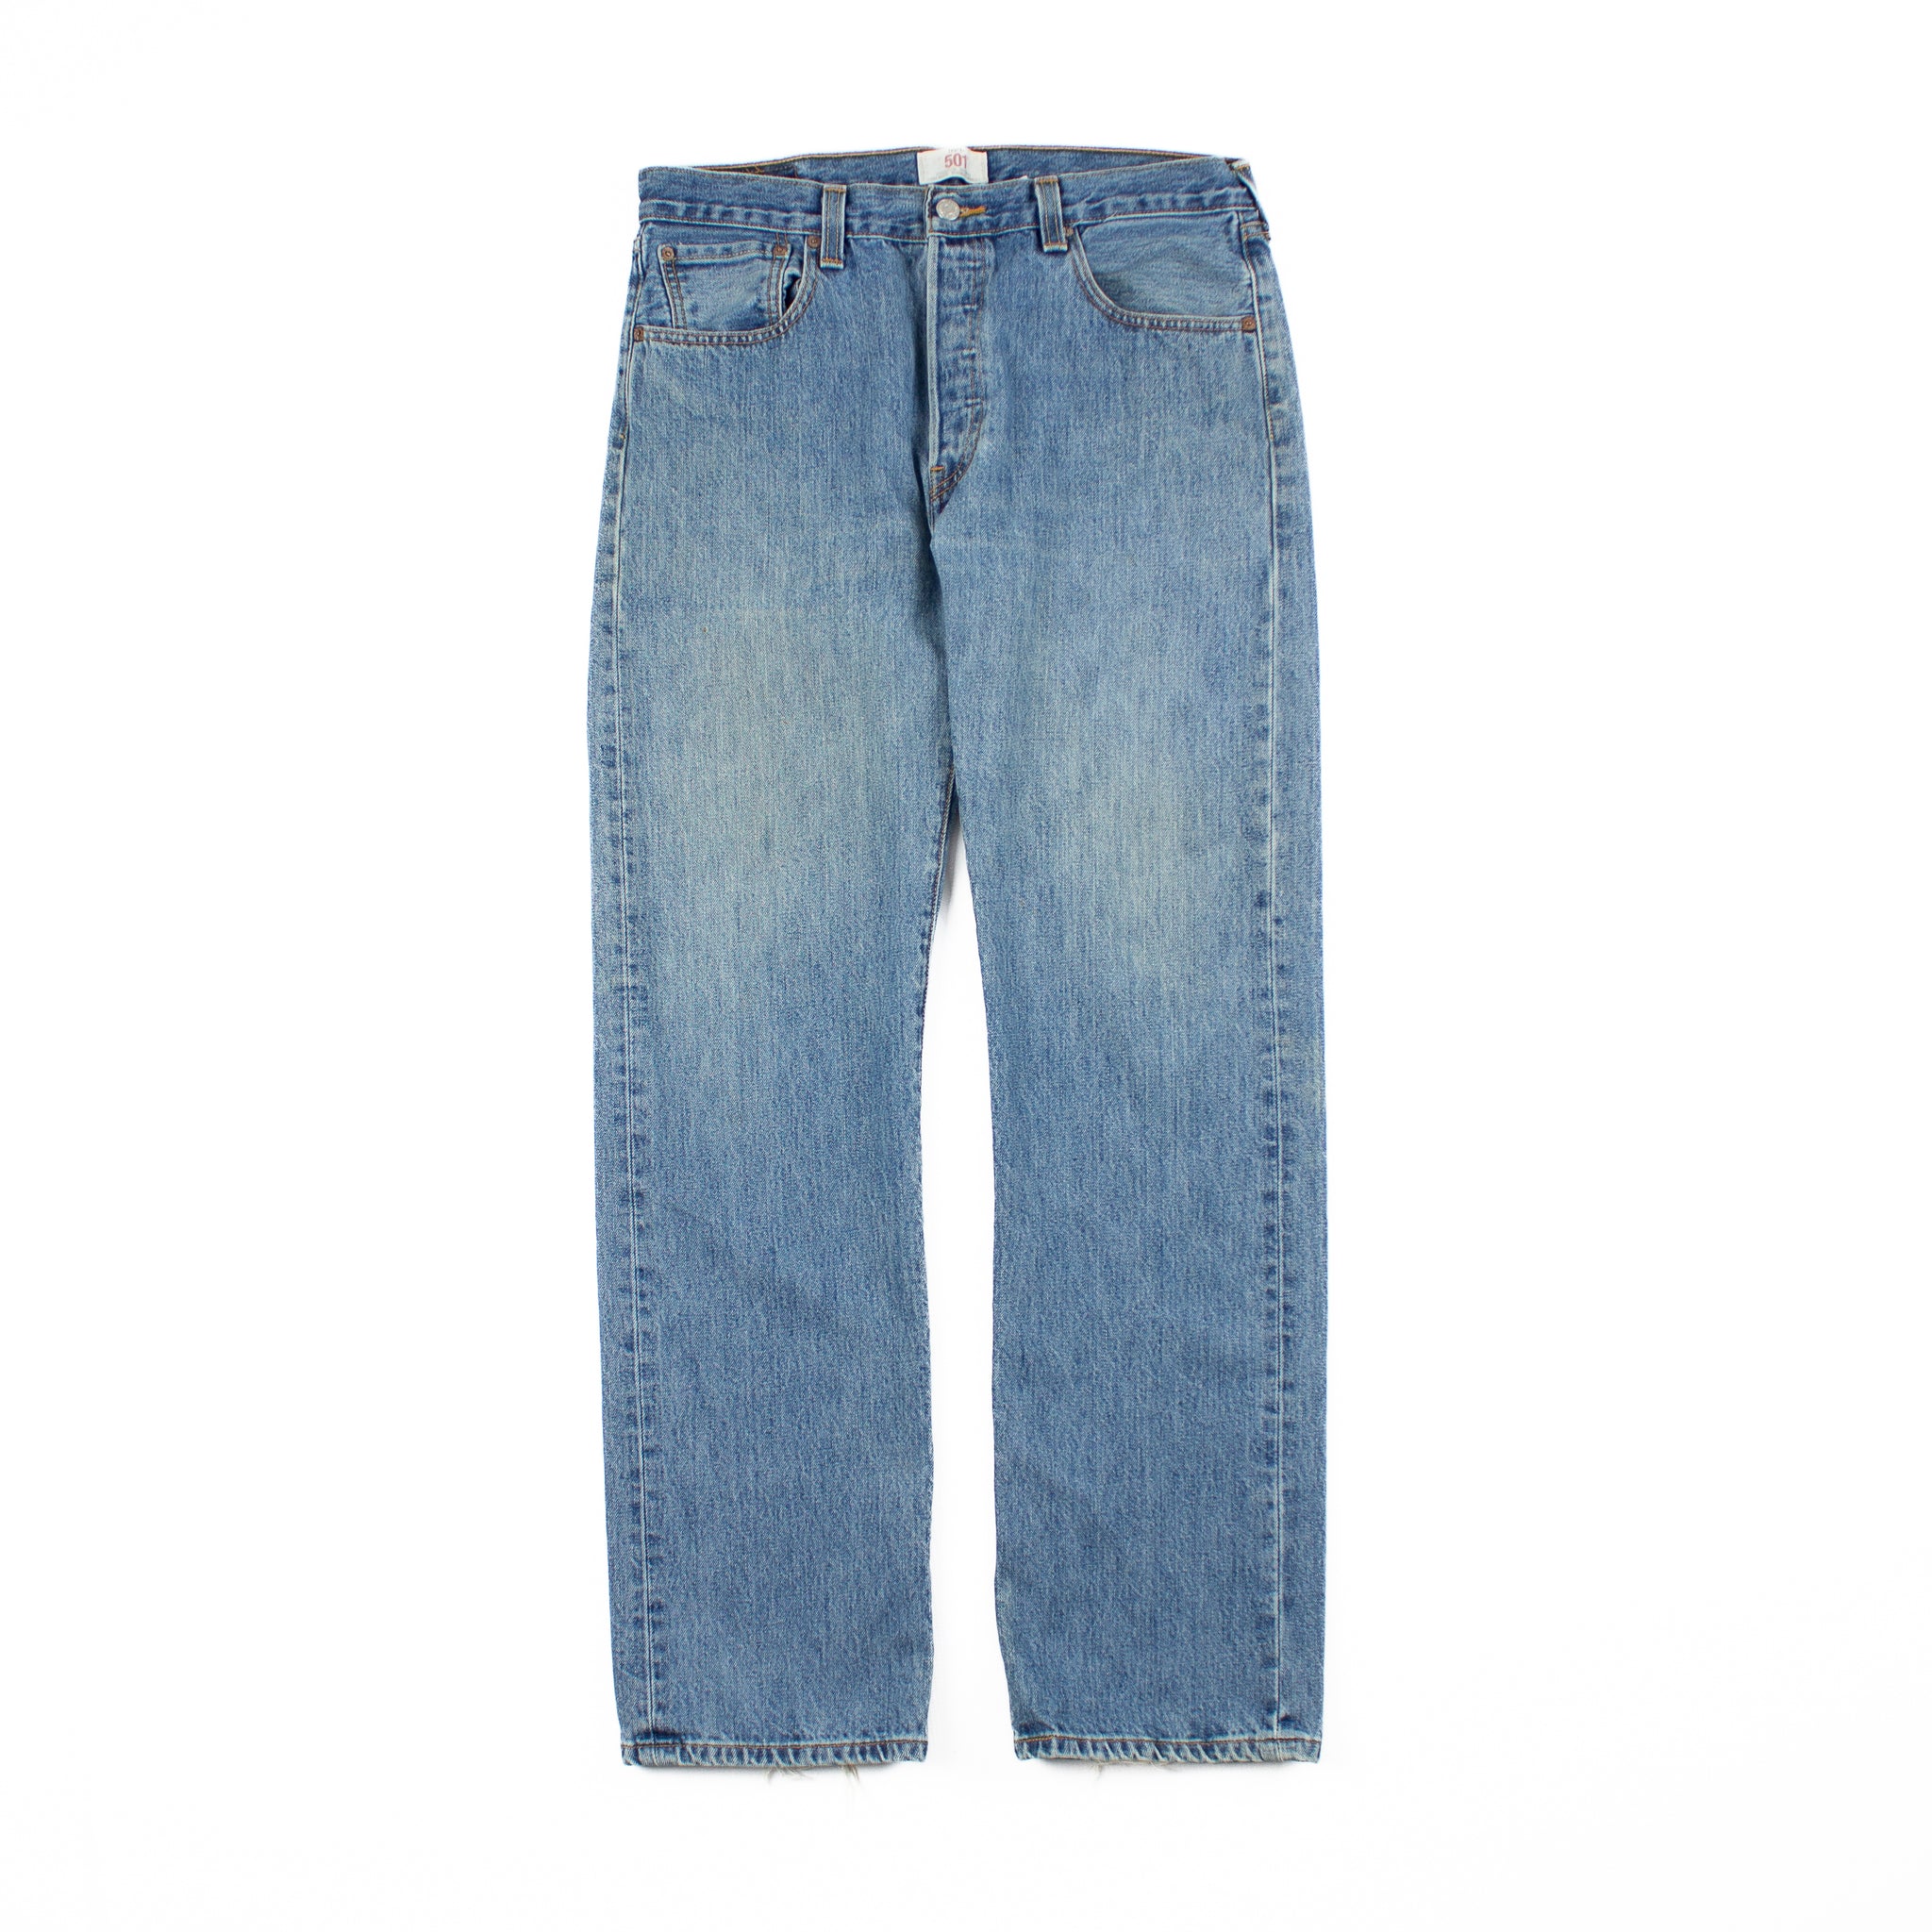 Jeans Levi's 34 x 32 Vintage